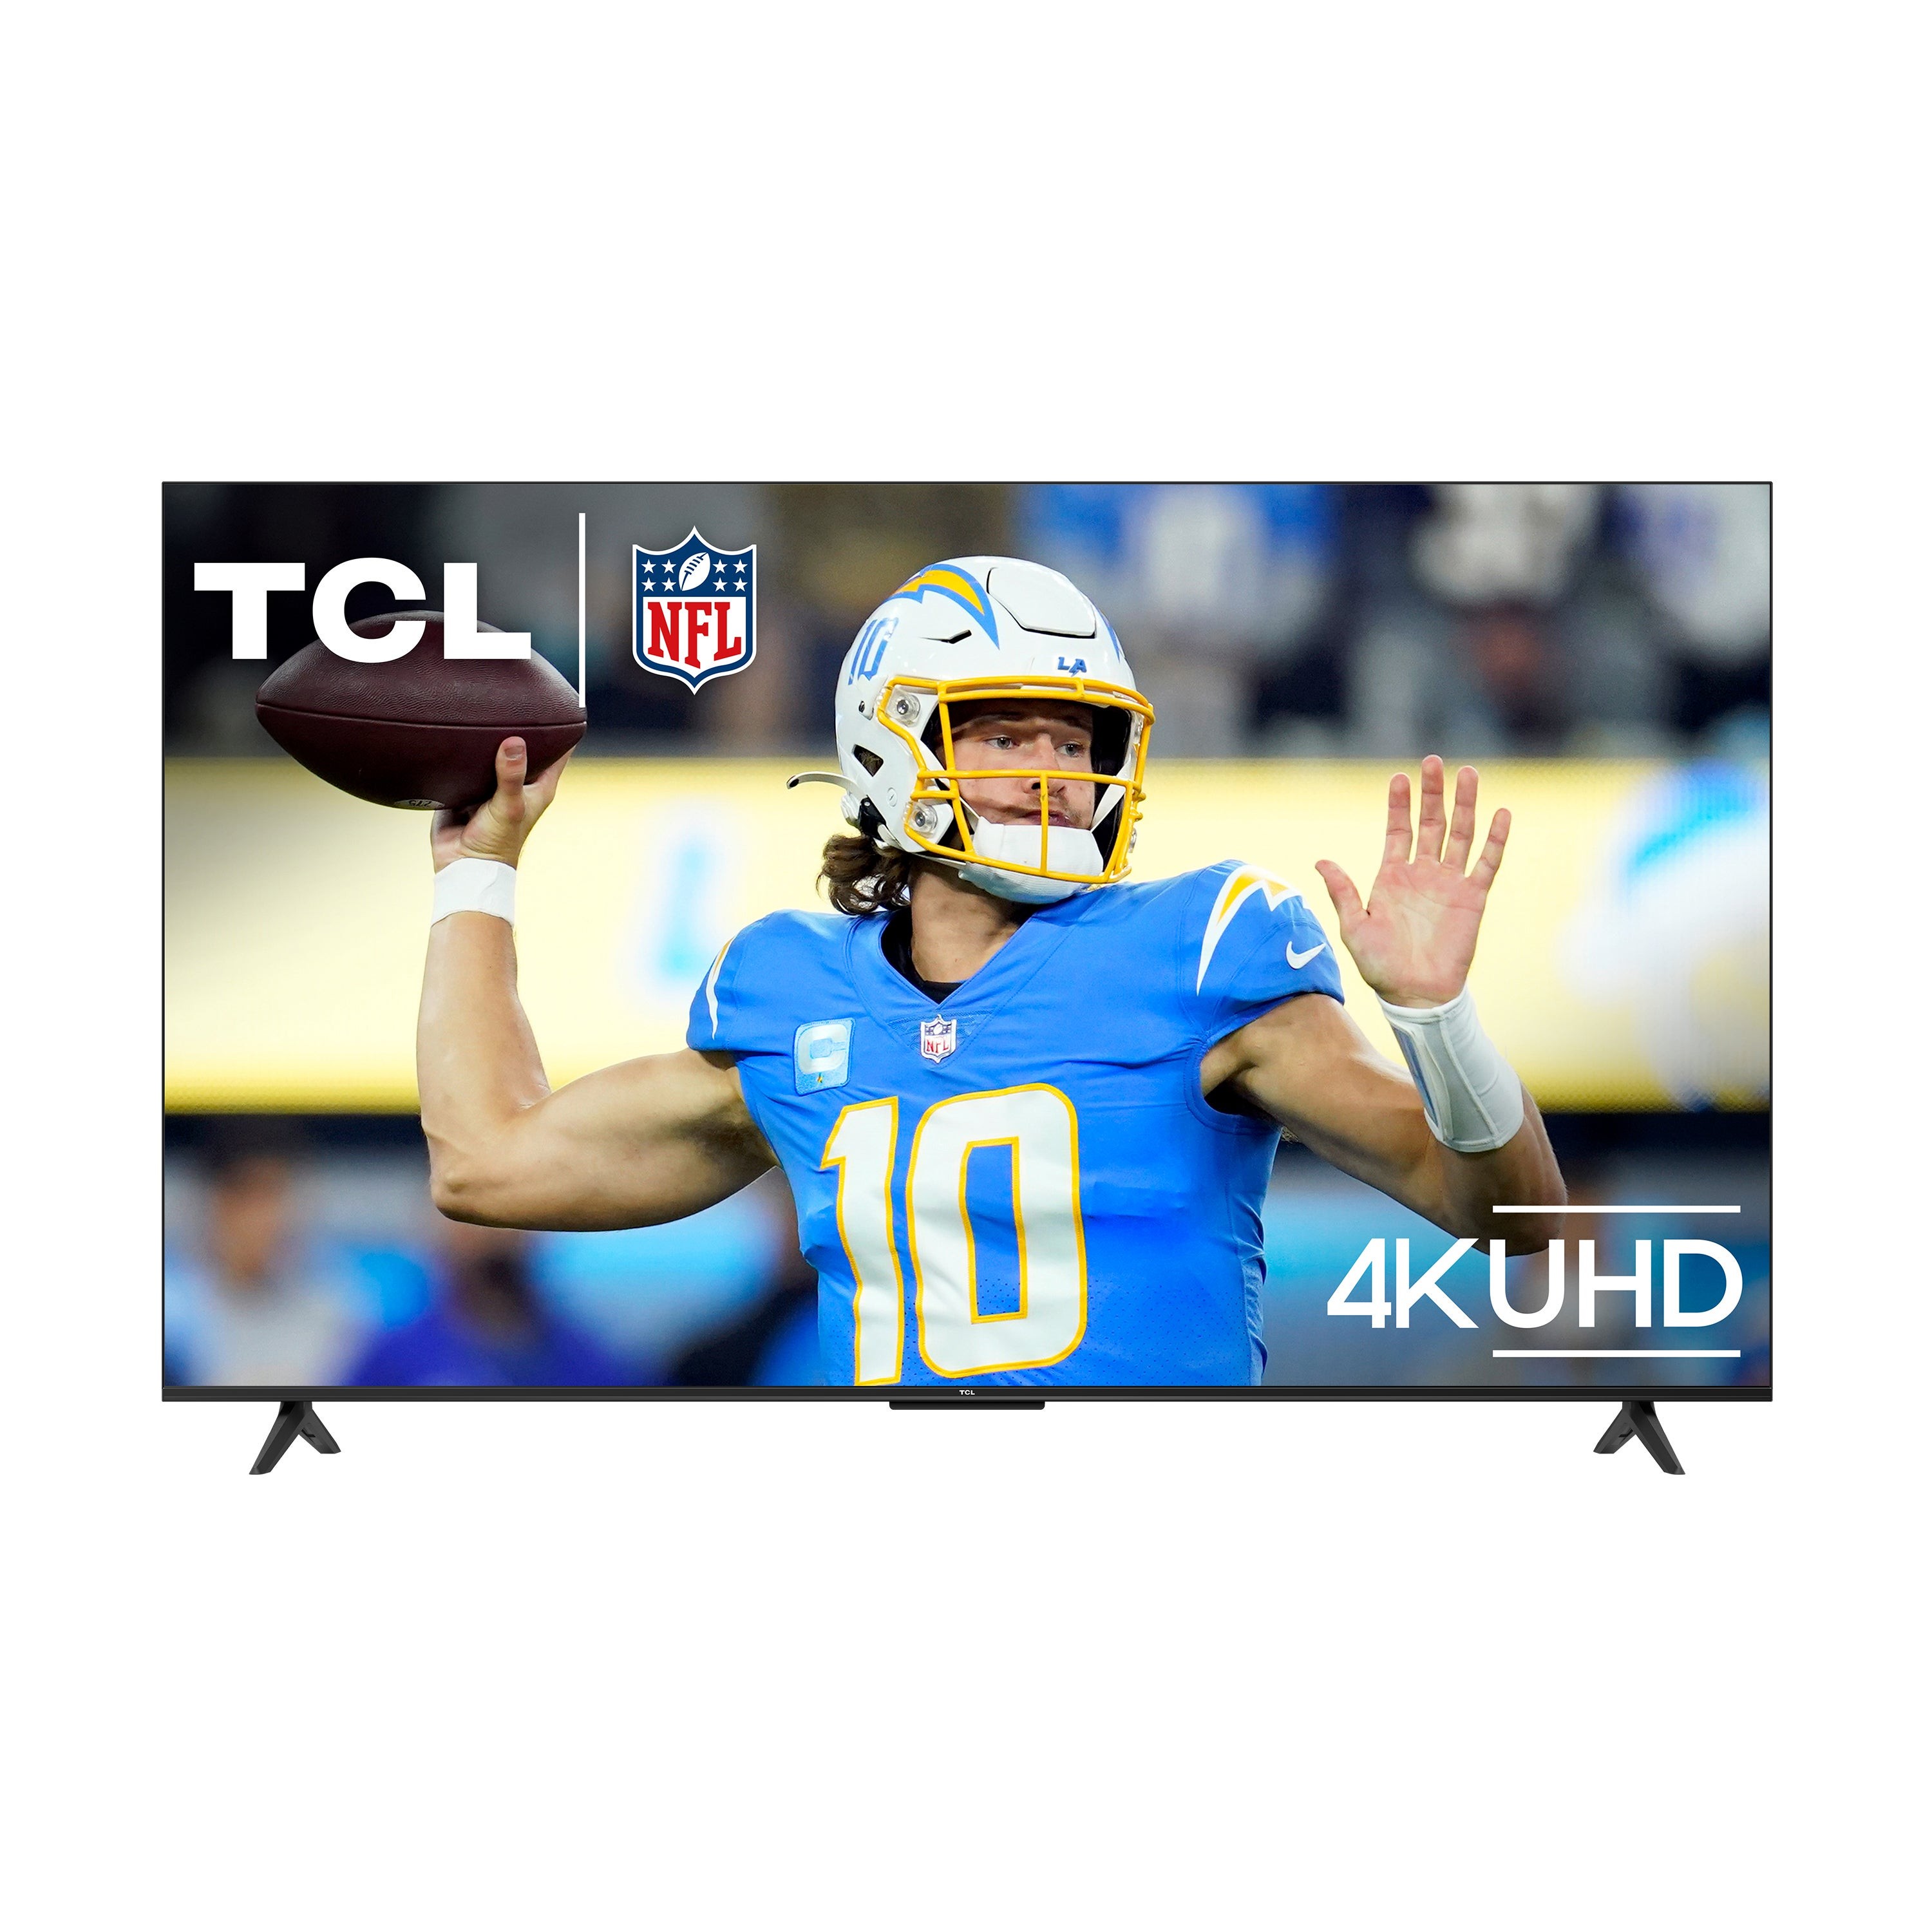 65" S Class 4K UHD HDR LED Smart TV w/ Google TV